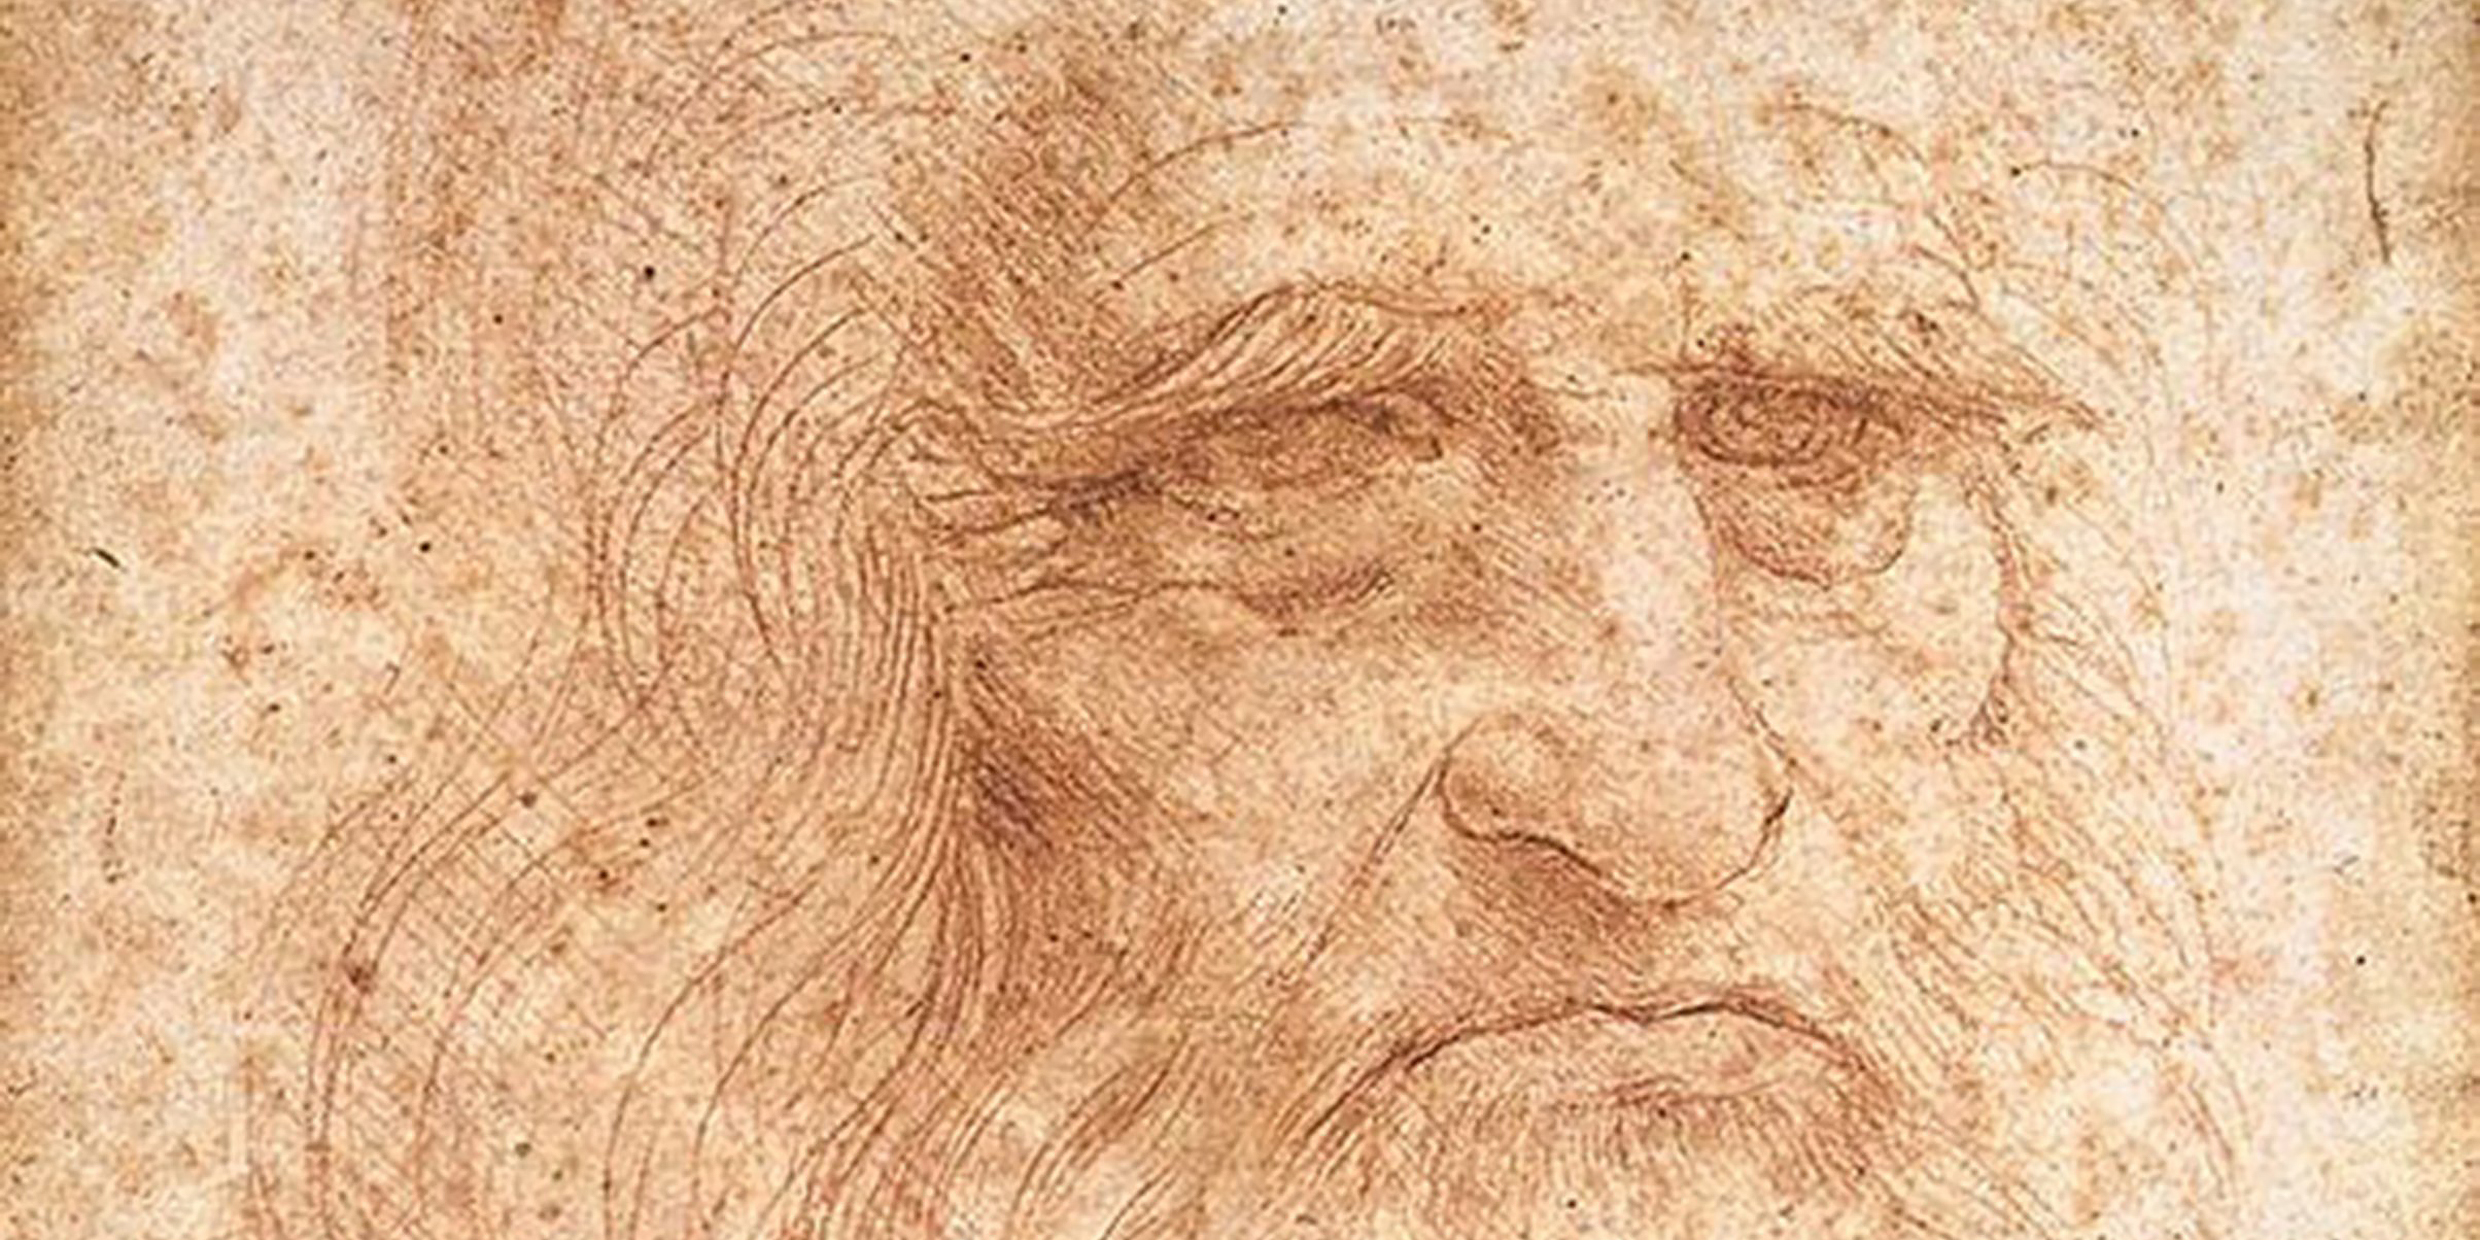 Portrait of an aged man drawn in red chalk by Leonardo da Vinci